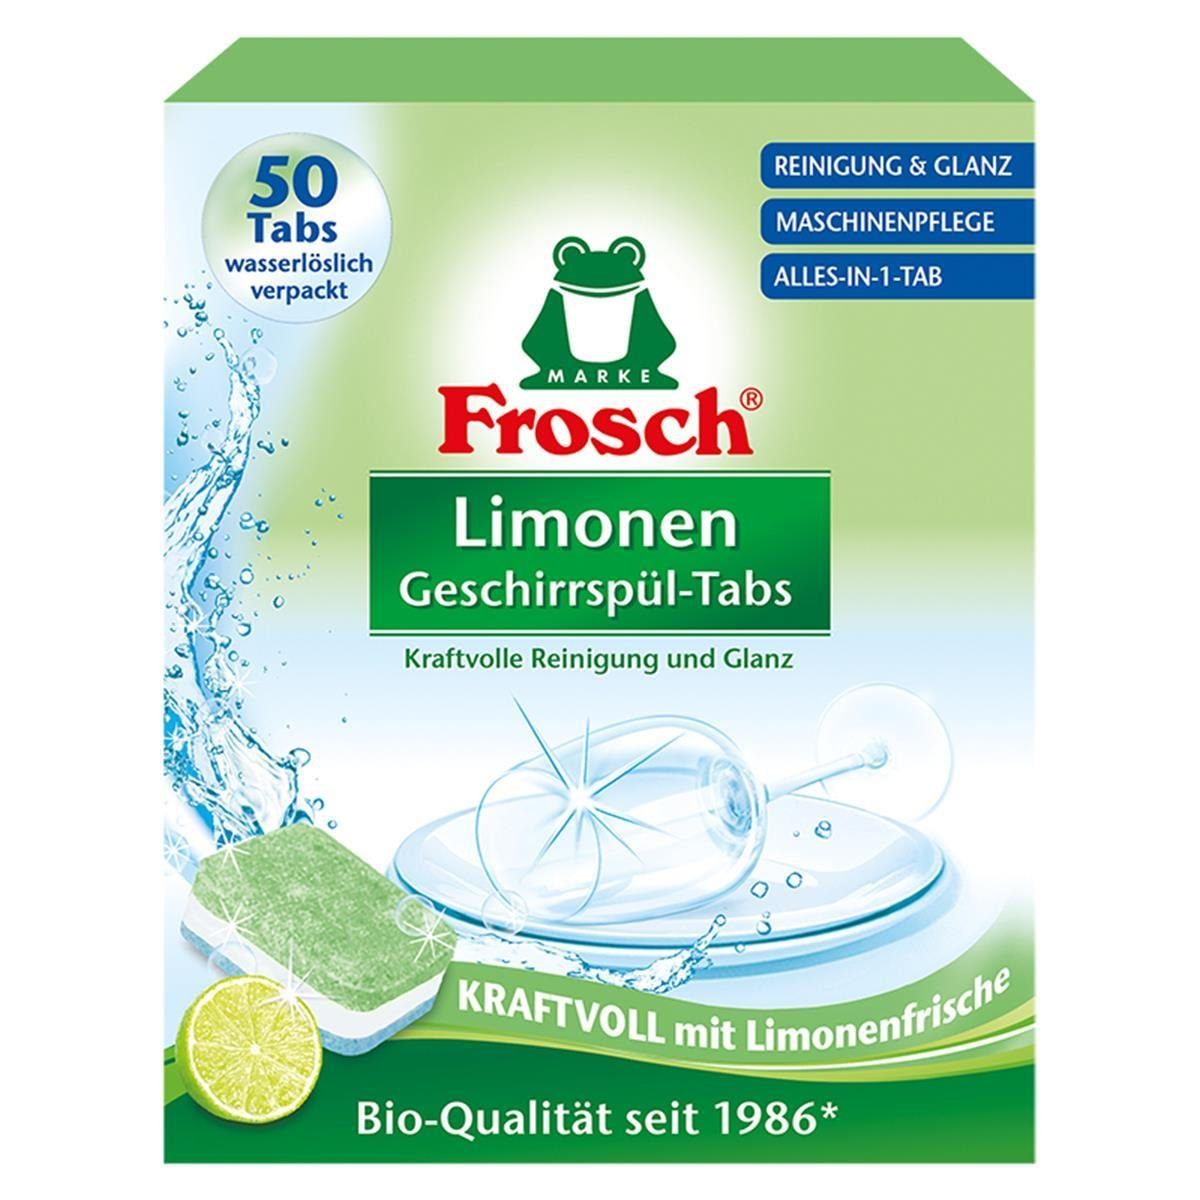 FROSCH Frosch Limonen Geschirrspül-Tabs 50 Tabs – Reinigung und Glanz Geschirrspülmittel